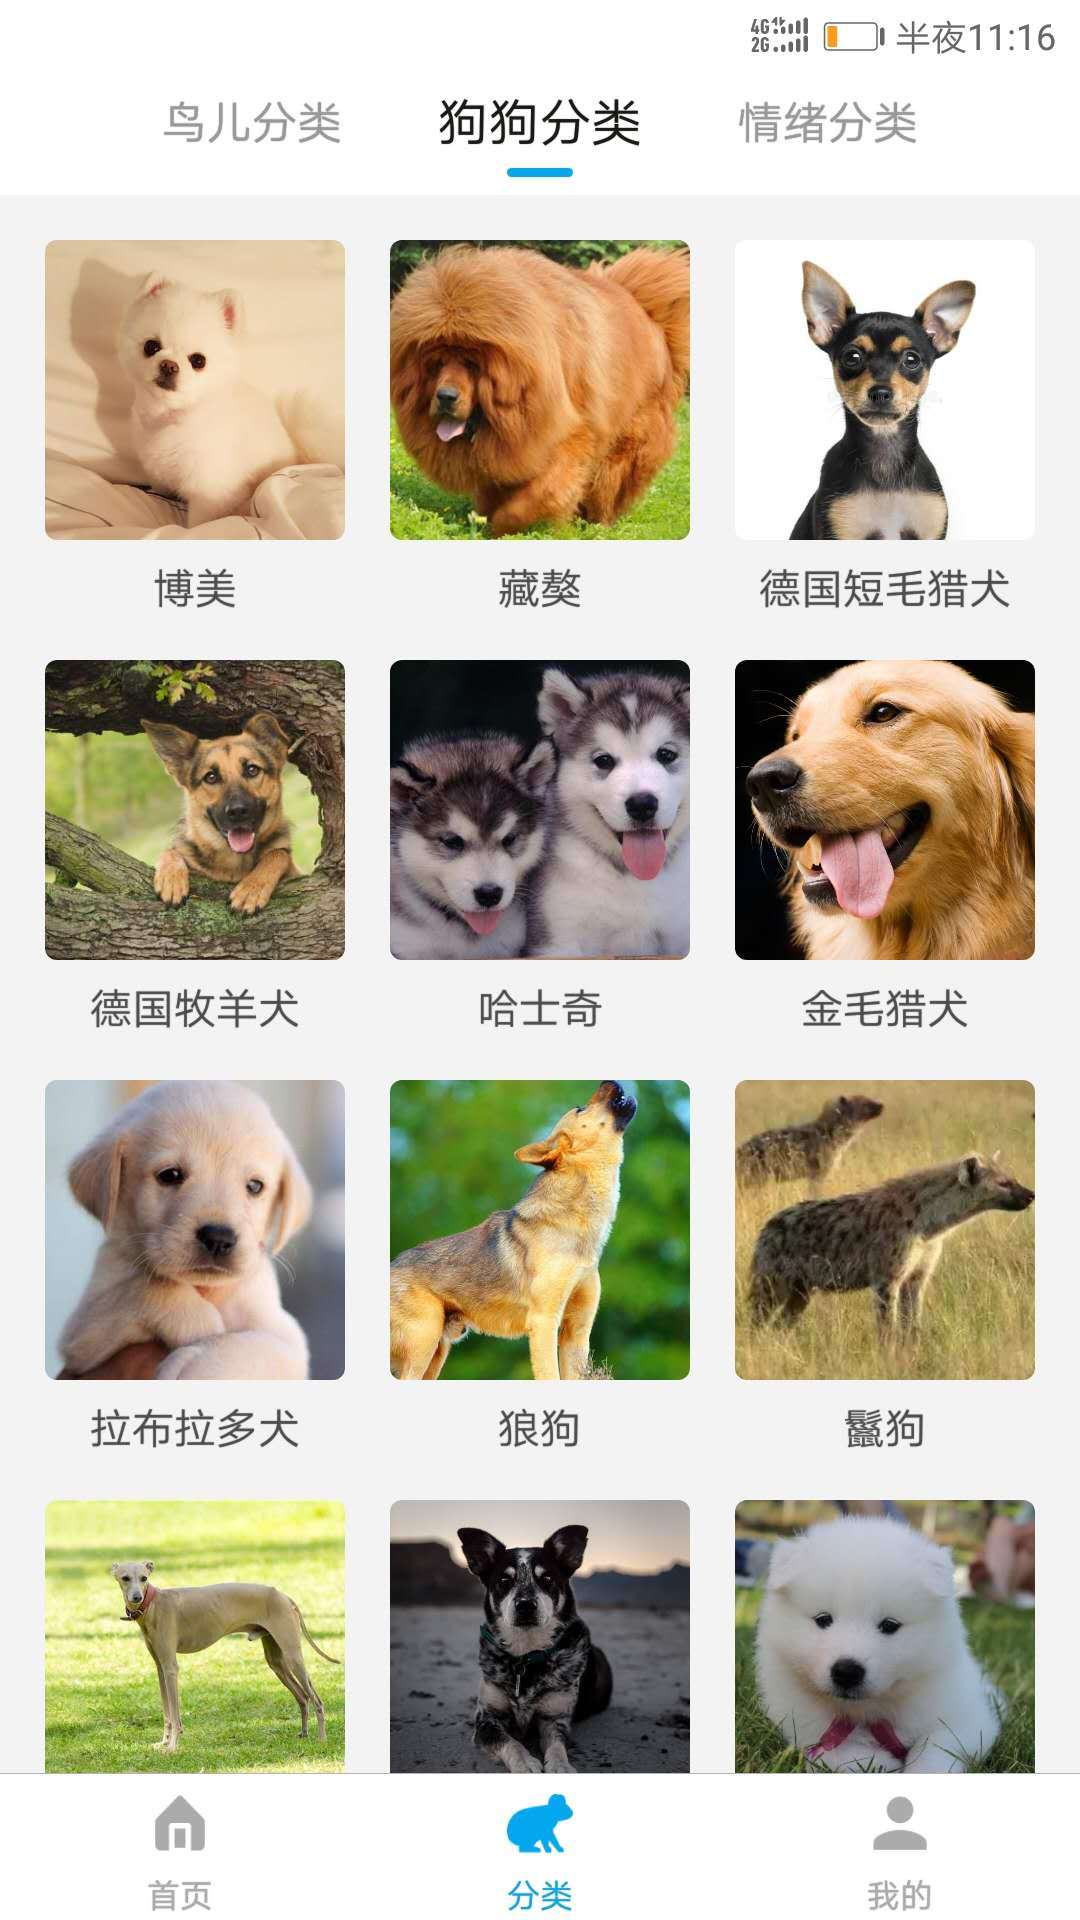 动物翻译器中文版下载免费